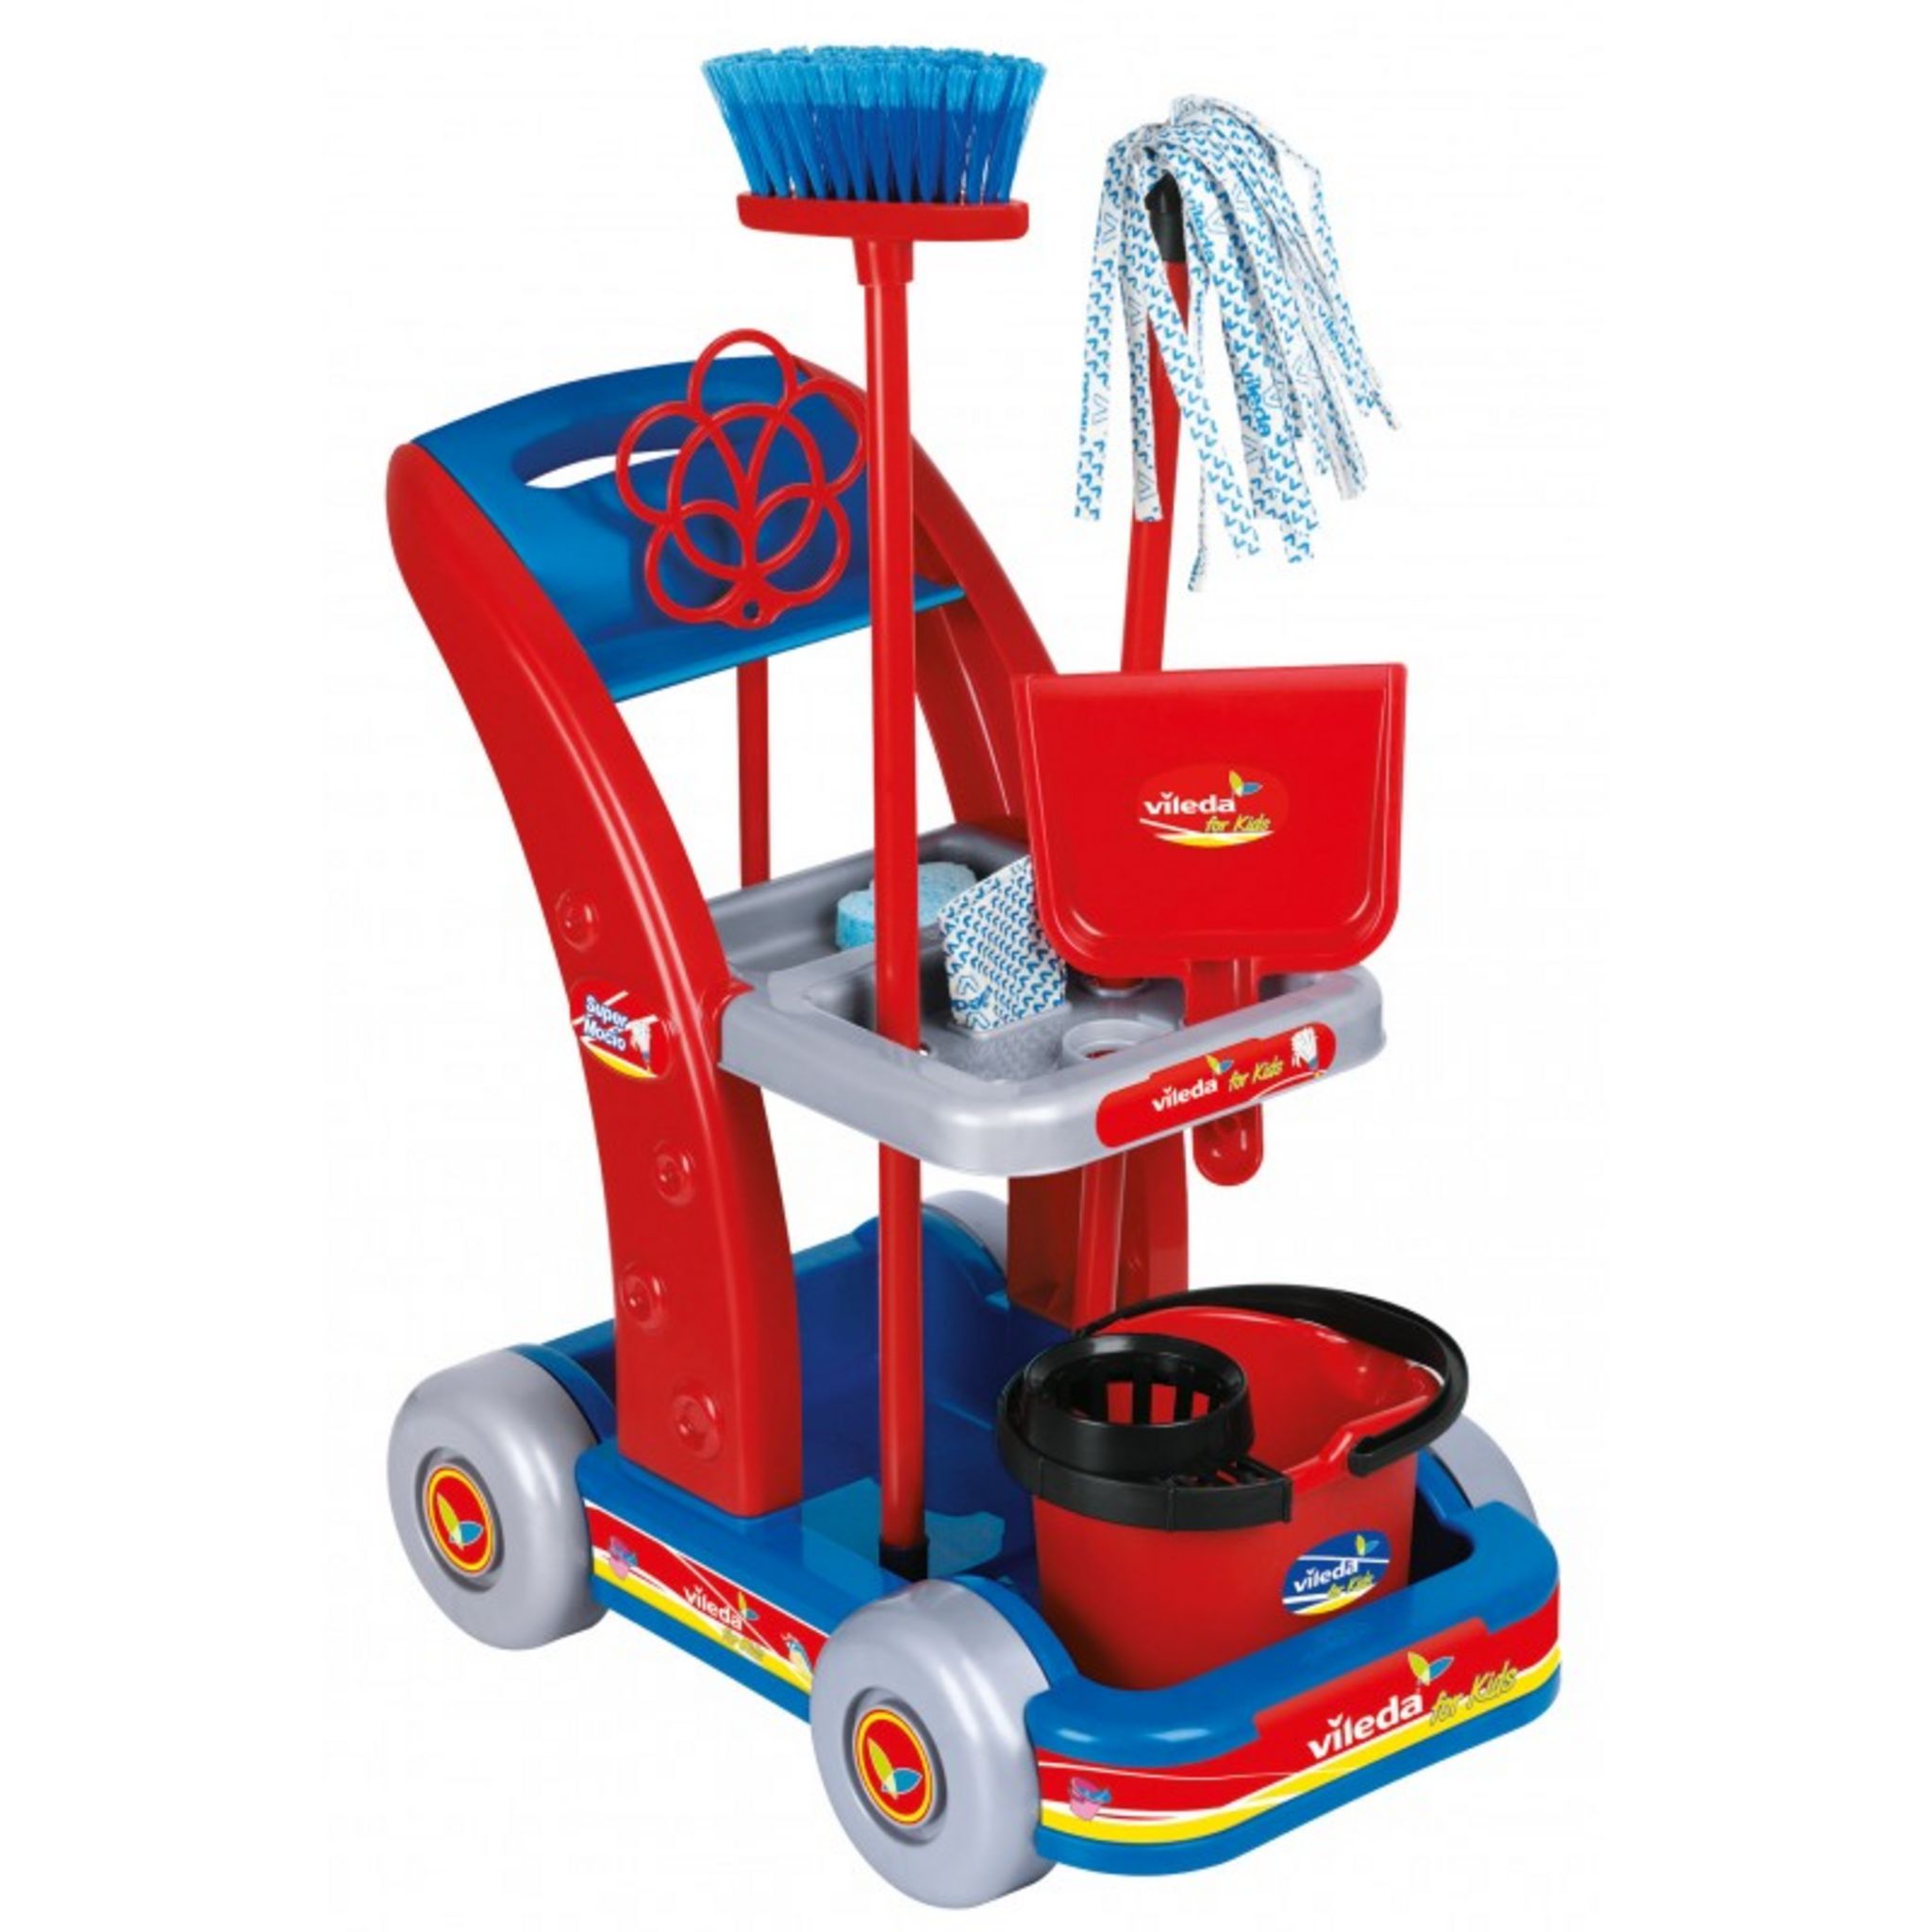 Chariot de ménage Vileda et aspirateur - Jeux et jouets Klein